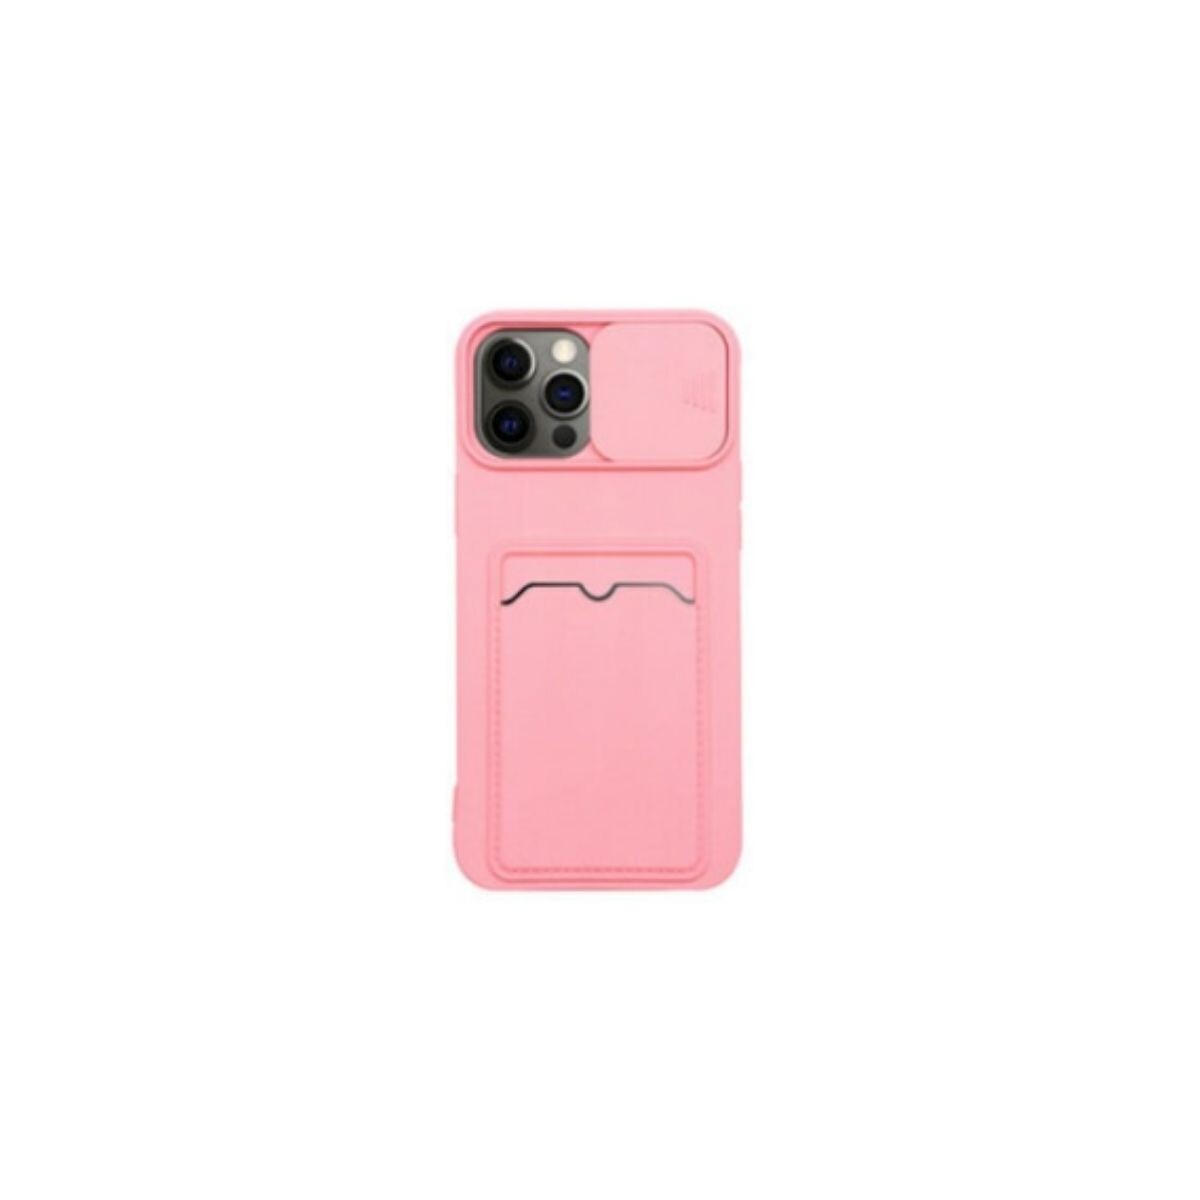 Protector cubre cámara para Iphone 11 rosa 